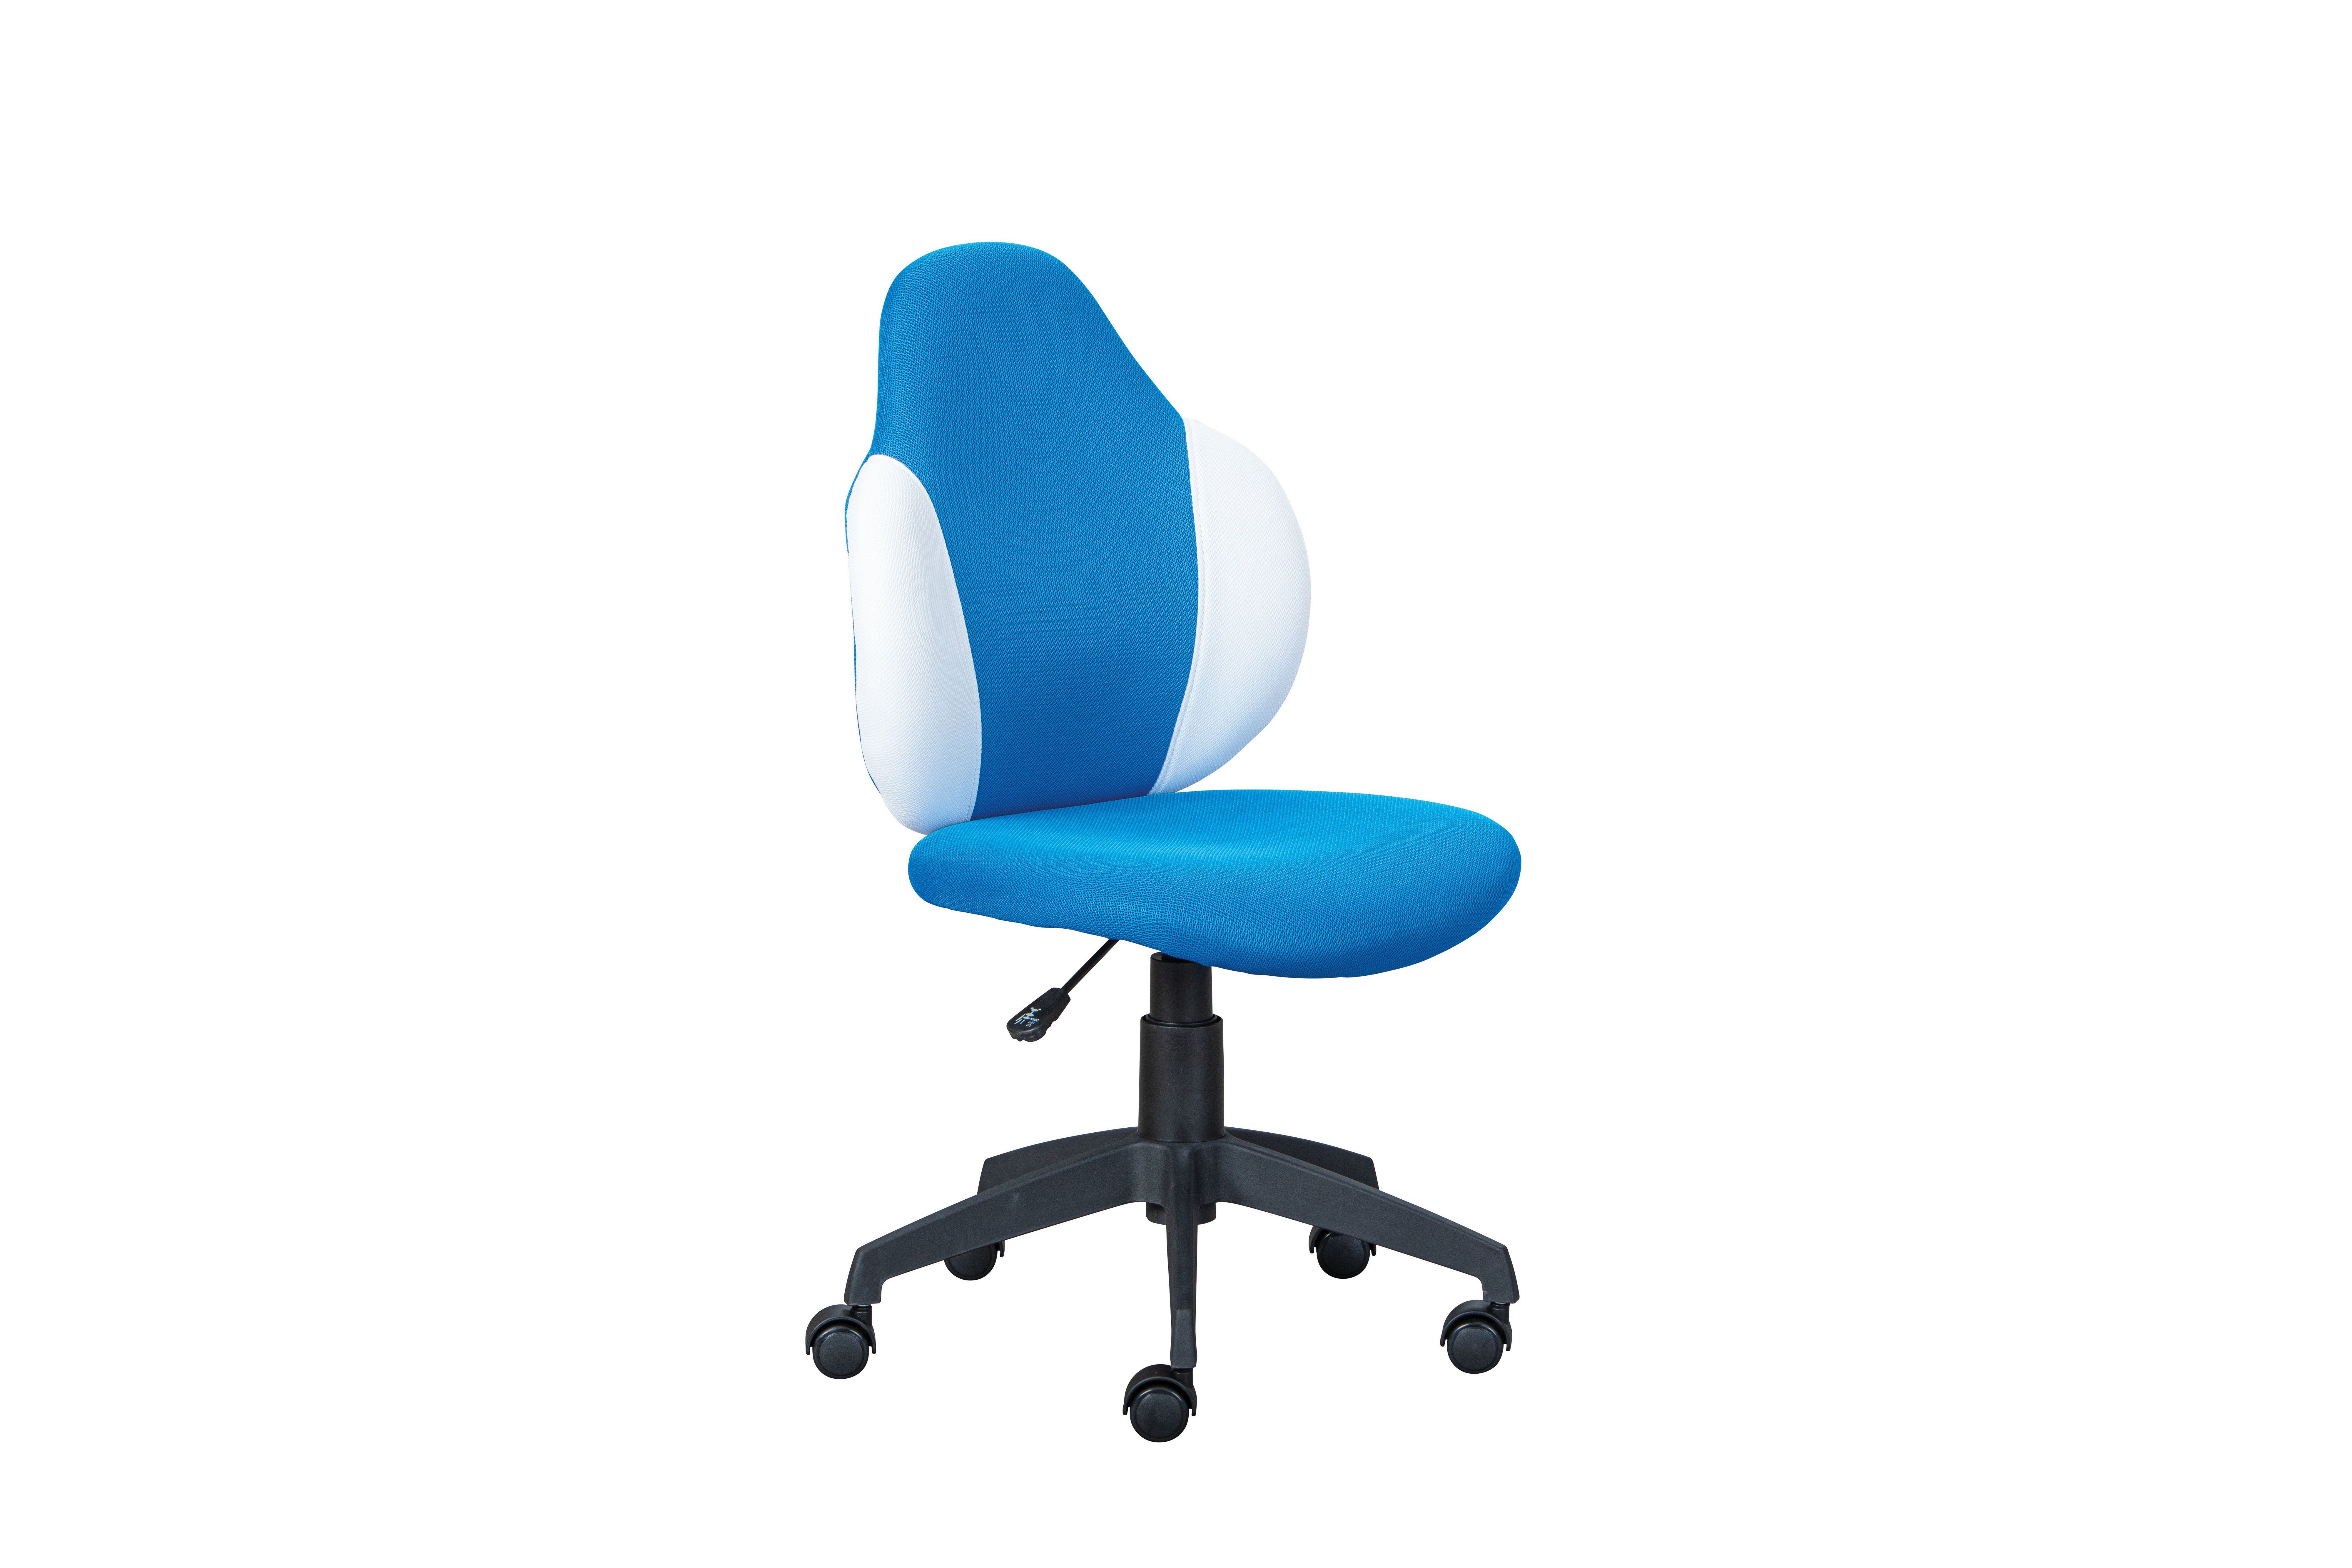 Inter Link Kinderstuhl Jessi blau/weiß, moderner Kinderstuhl, in verschiedenen Trendfarben, mit Hartbodenrollen